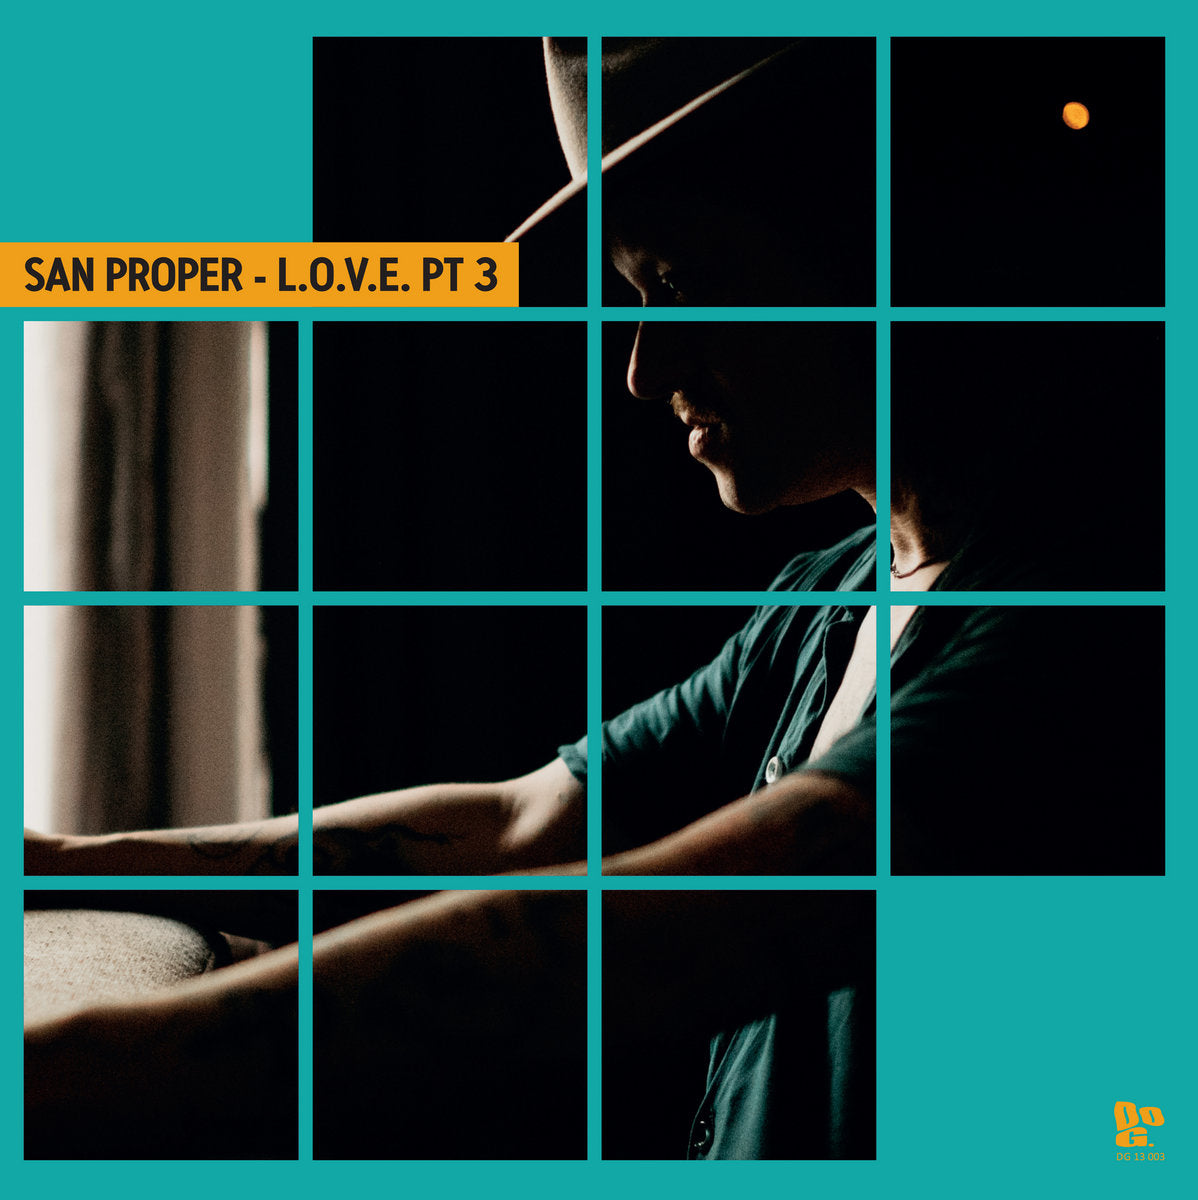 San Proper - San Proper & The Love Present L.O.V.E PT 3 [DG 13 003]